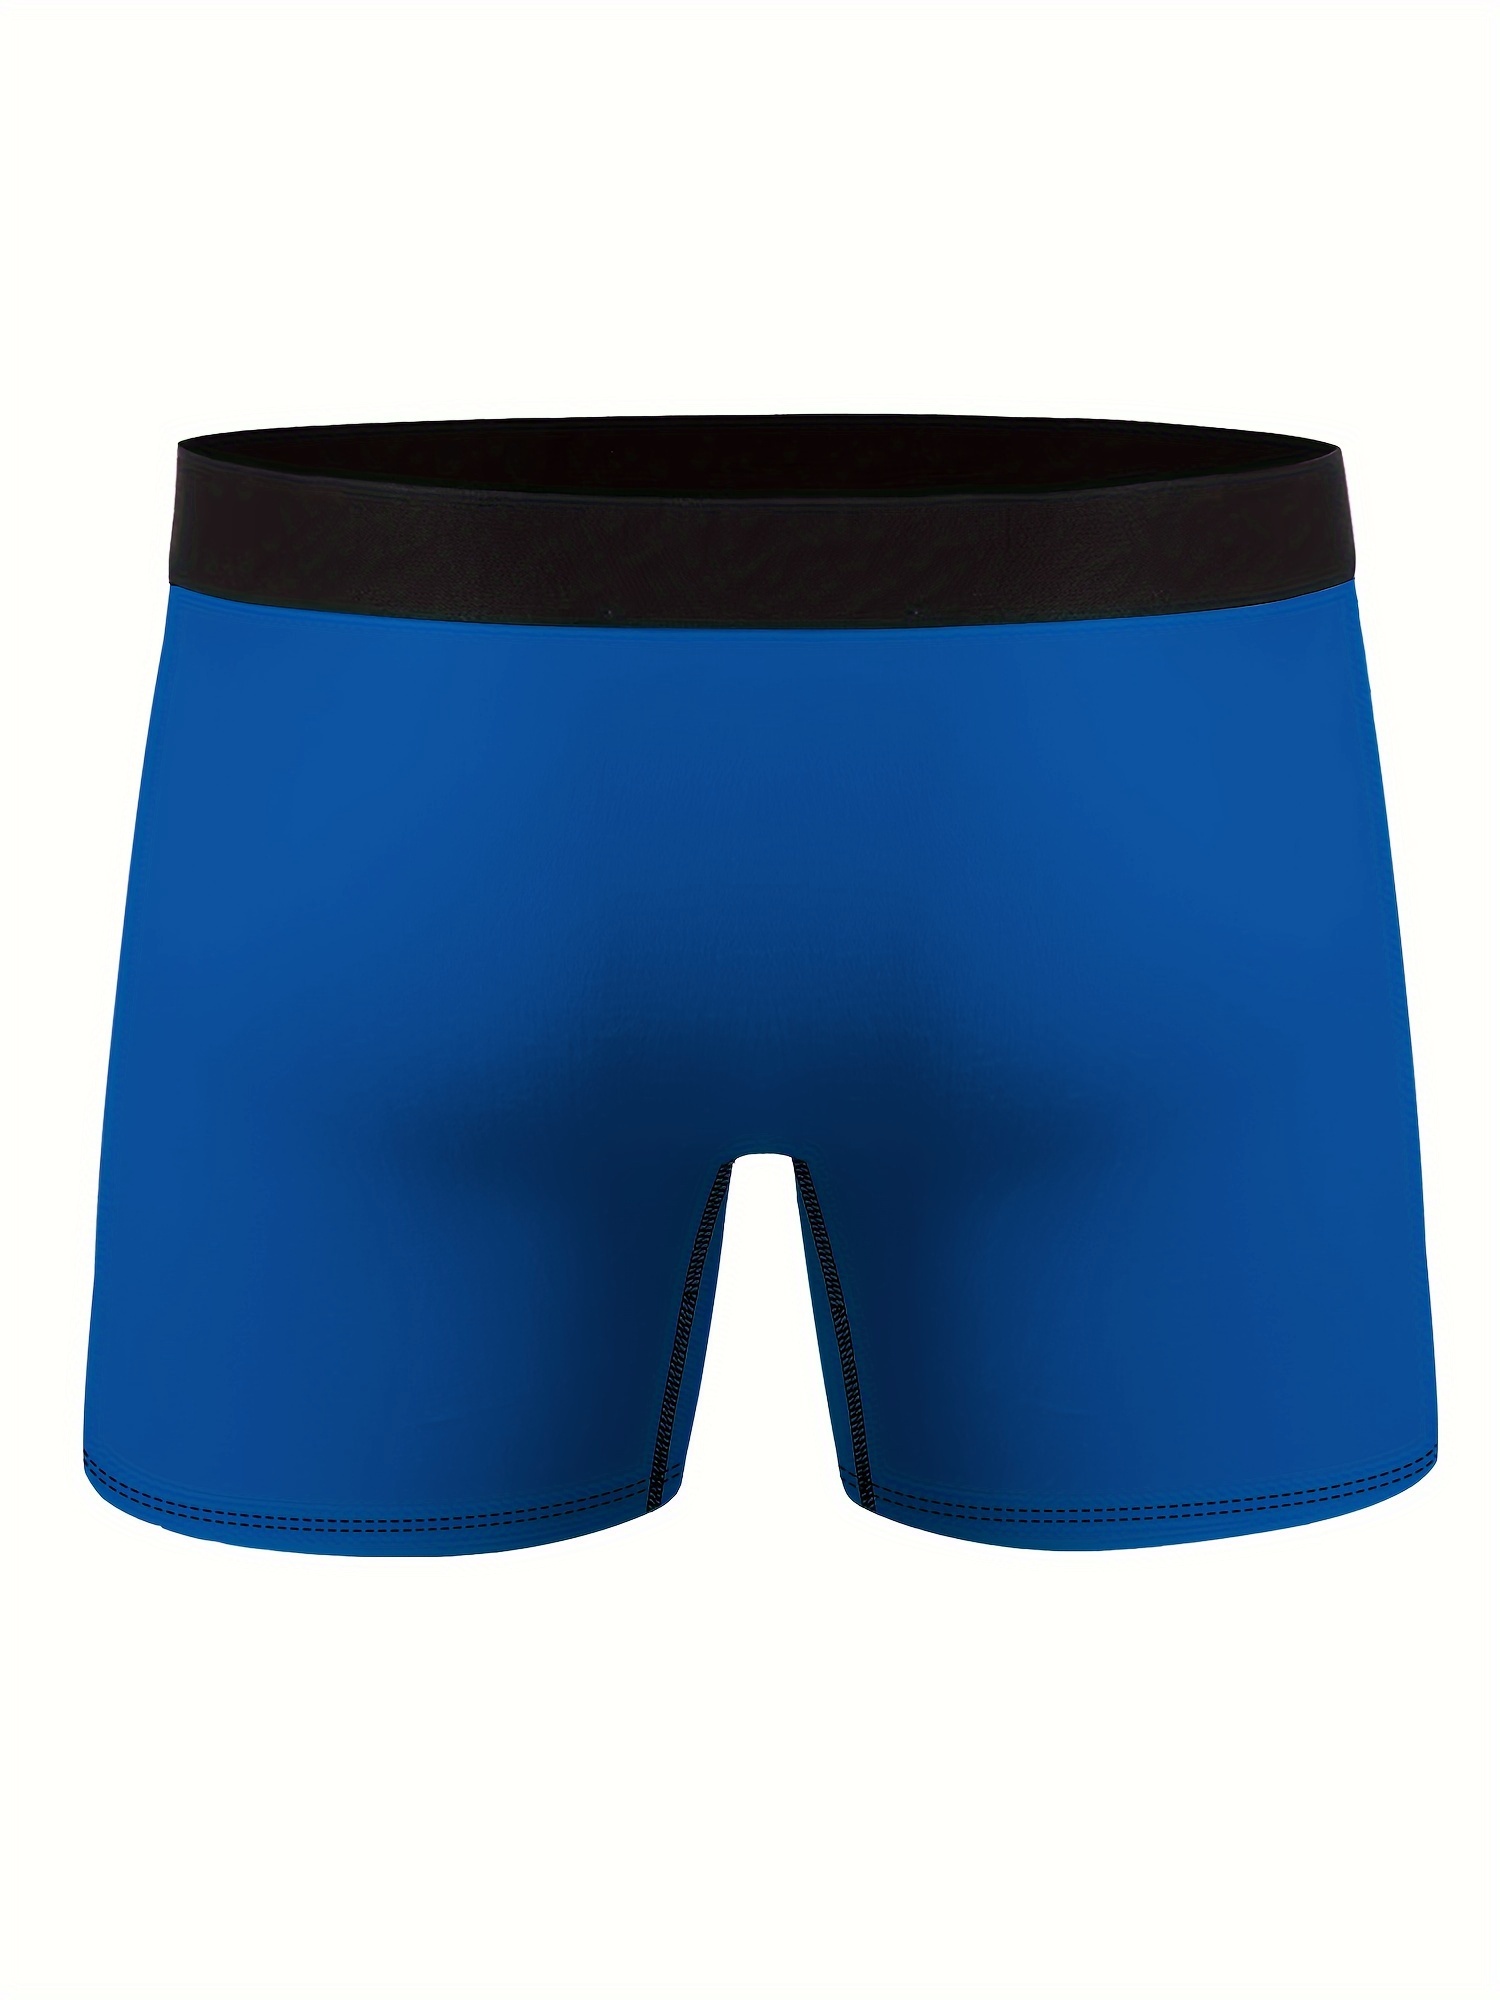 6X bonds guyfront trunks mens navy briefs boxer comfort underwear